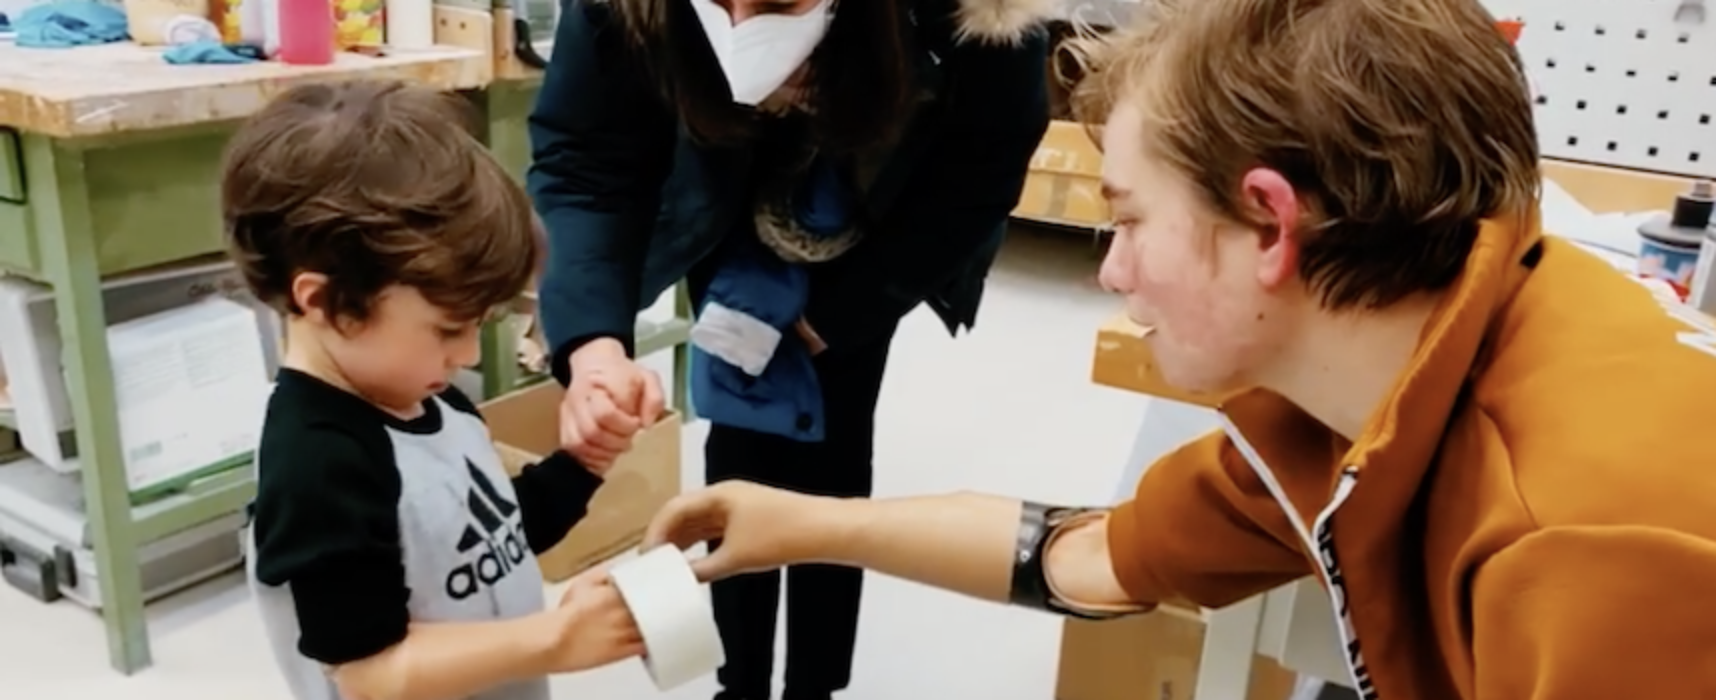 Bebe Vio mostra a bambino biscegliese come utilizzare la protesi mioelettrica / VIDEO